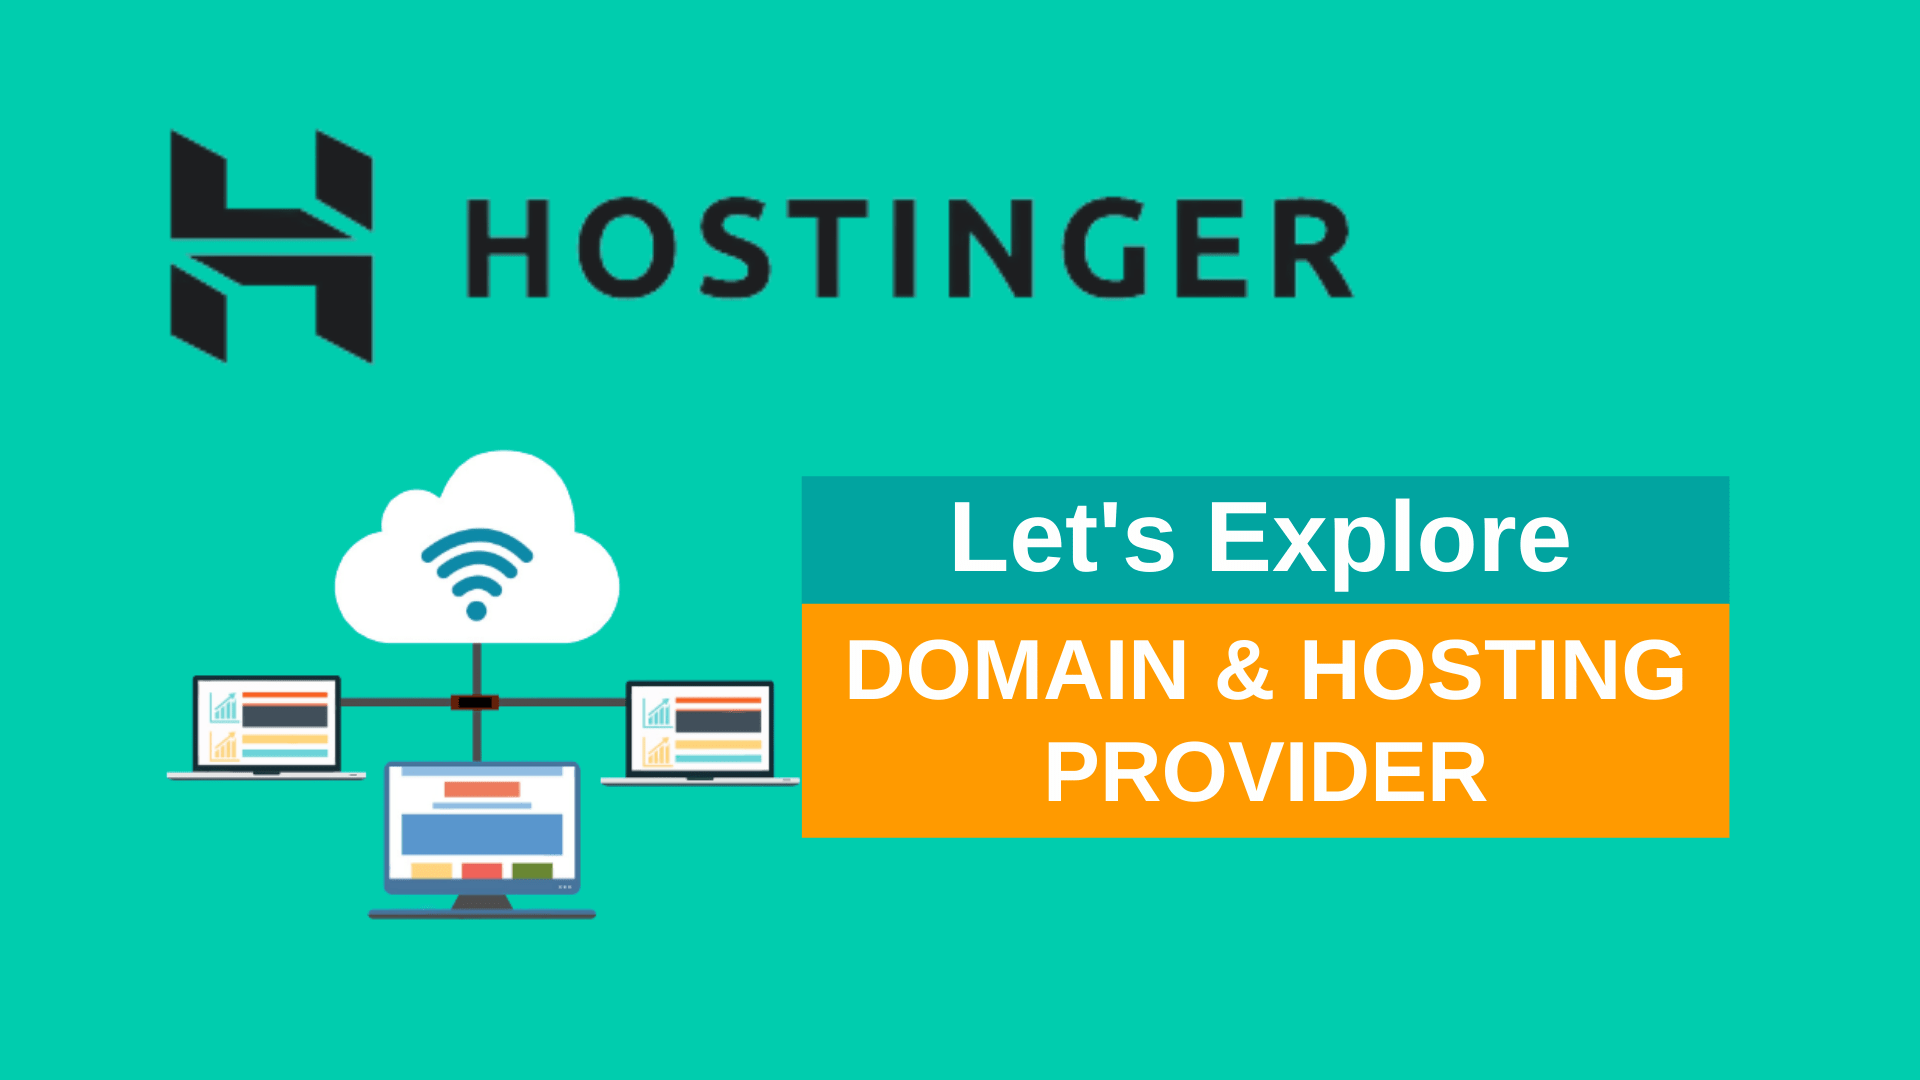 Get a Domain or Host Your Website on Hostinger.